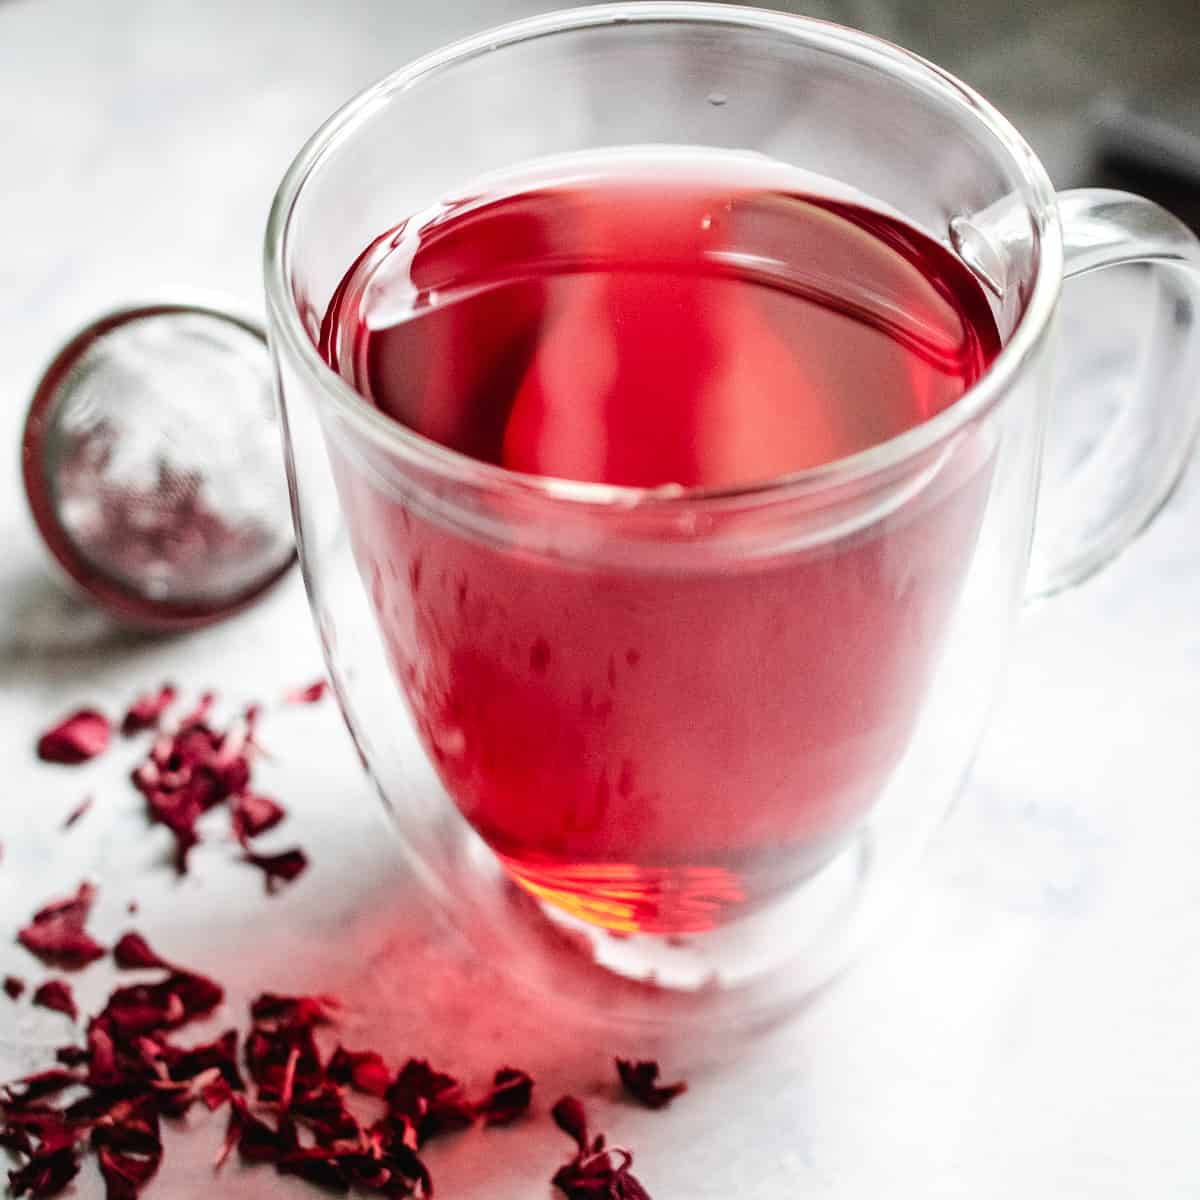 A glass mug of hot hibiscus tea.